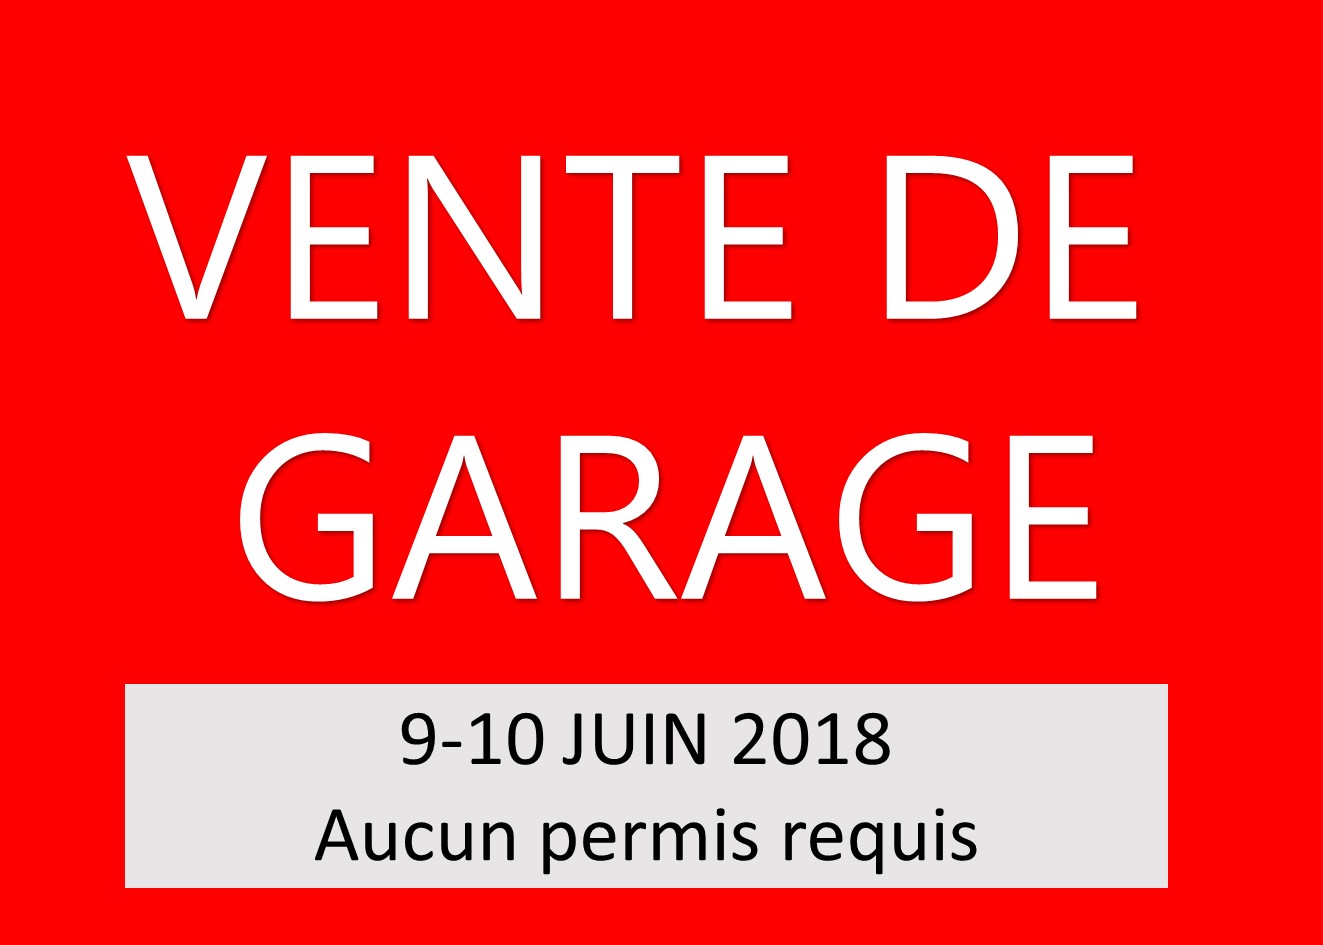 Vente de garage autorisées les 9-10 juin